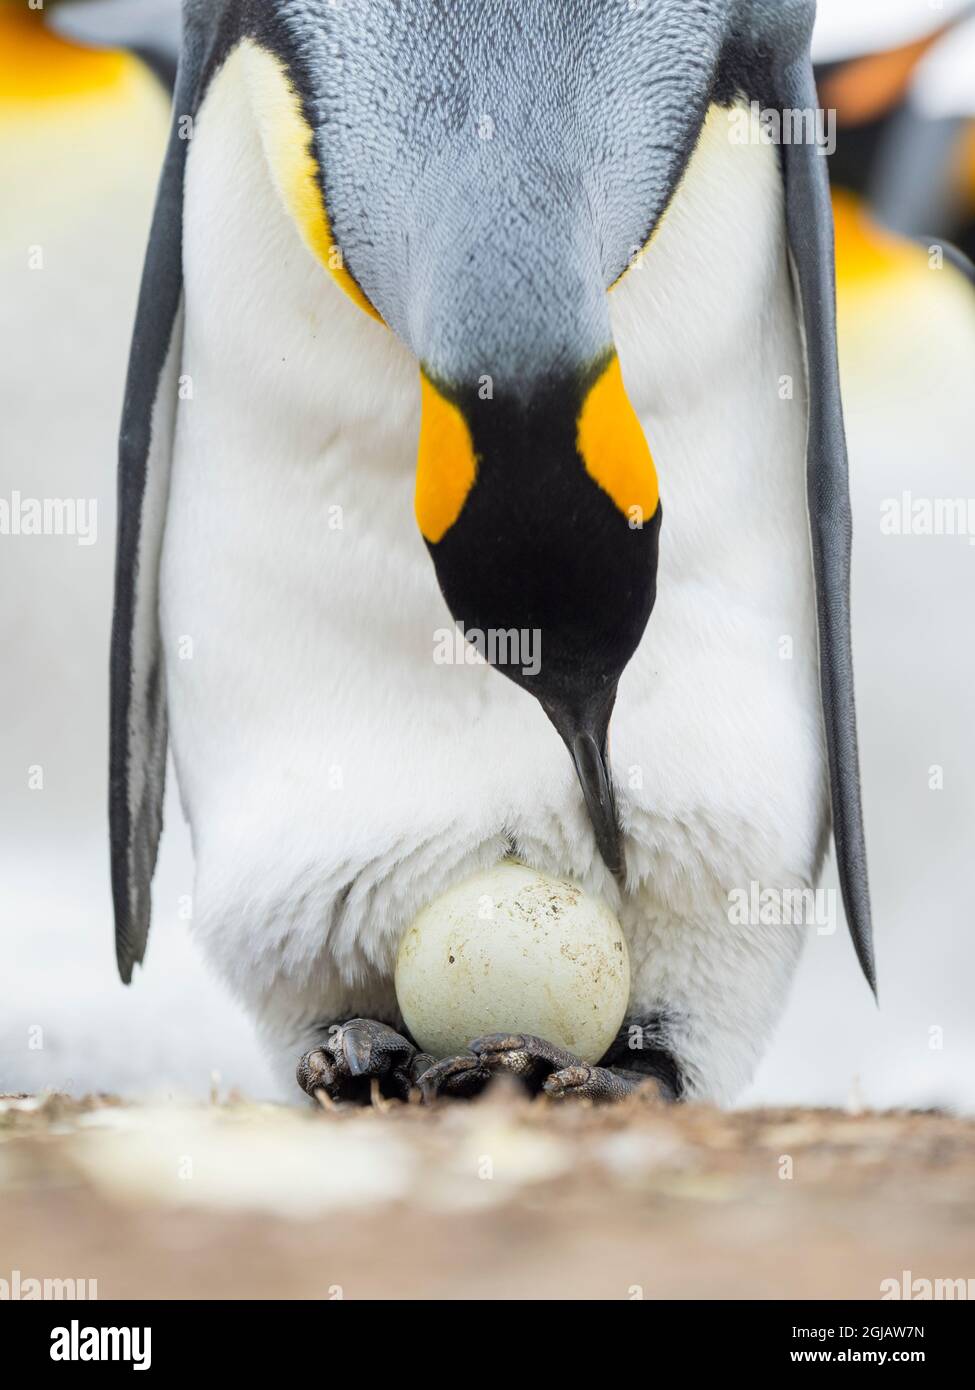 Emperor Penguin Chick Hatching